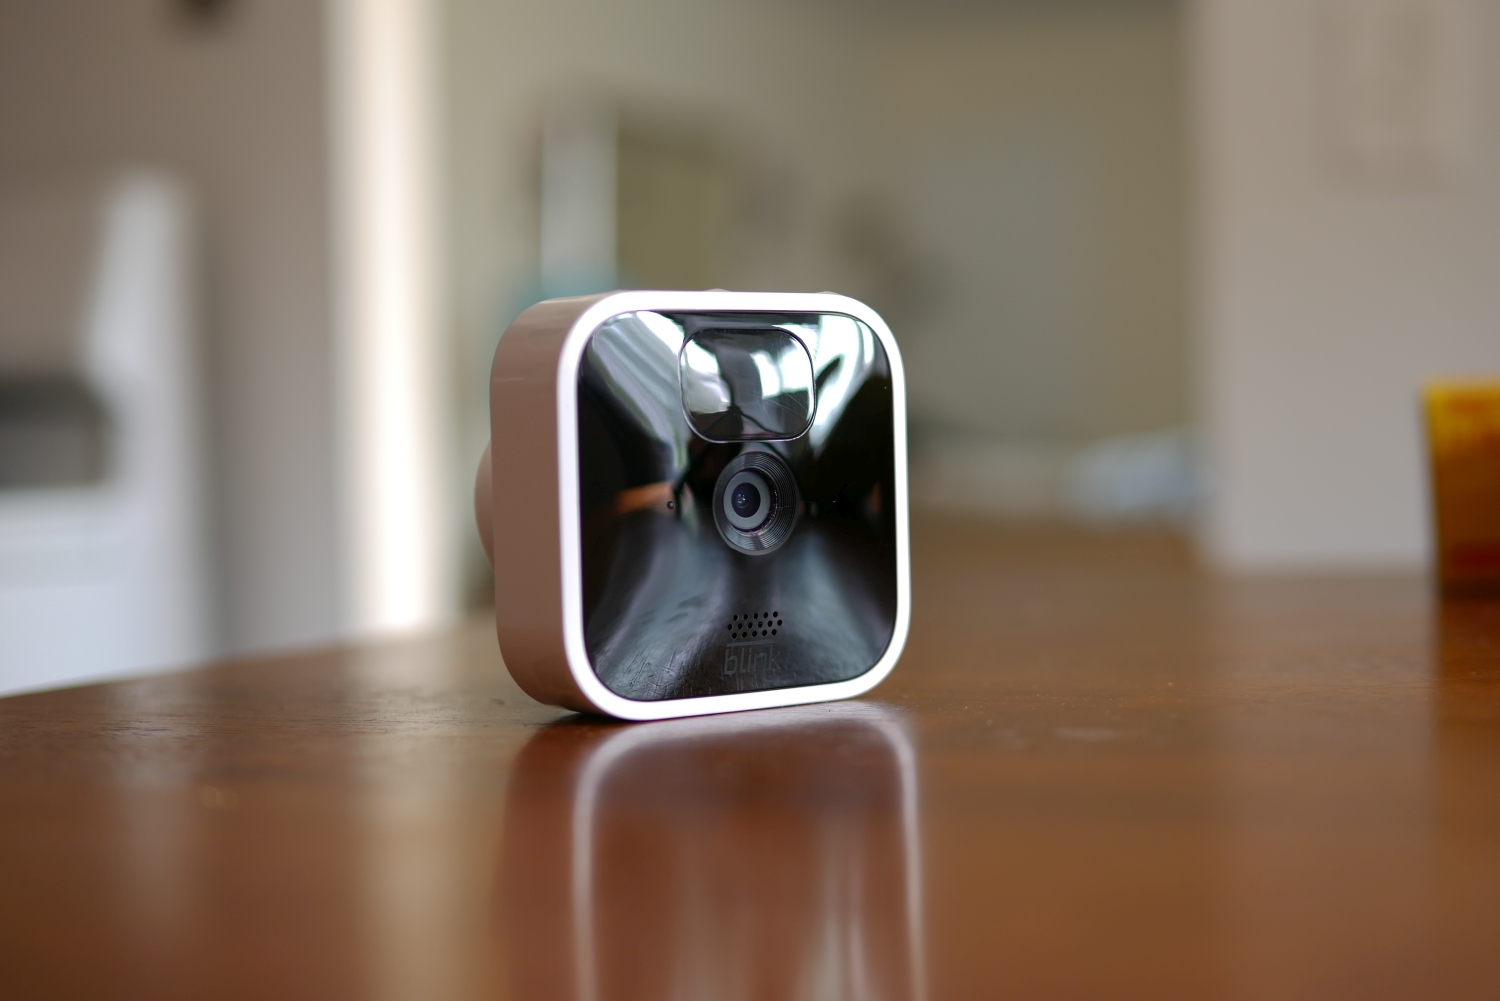 Security camera deal: Get 2 Blink indoor cameras for $30